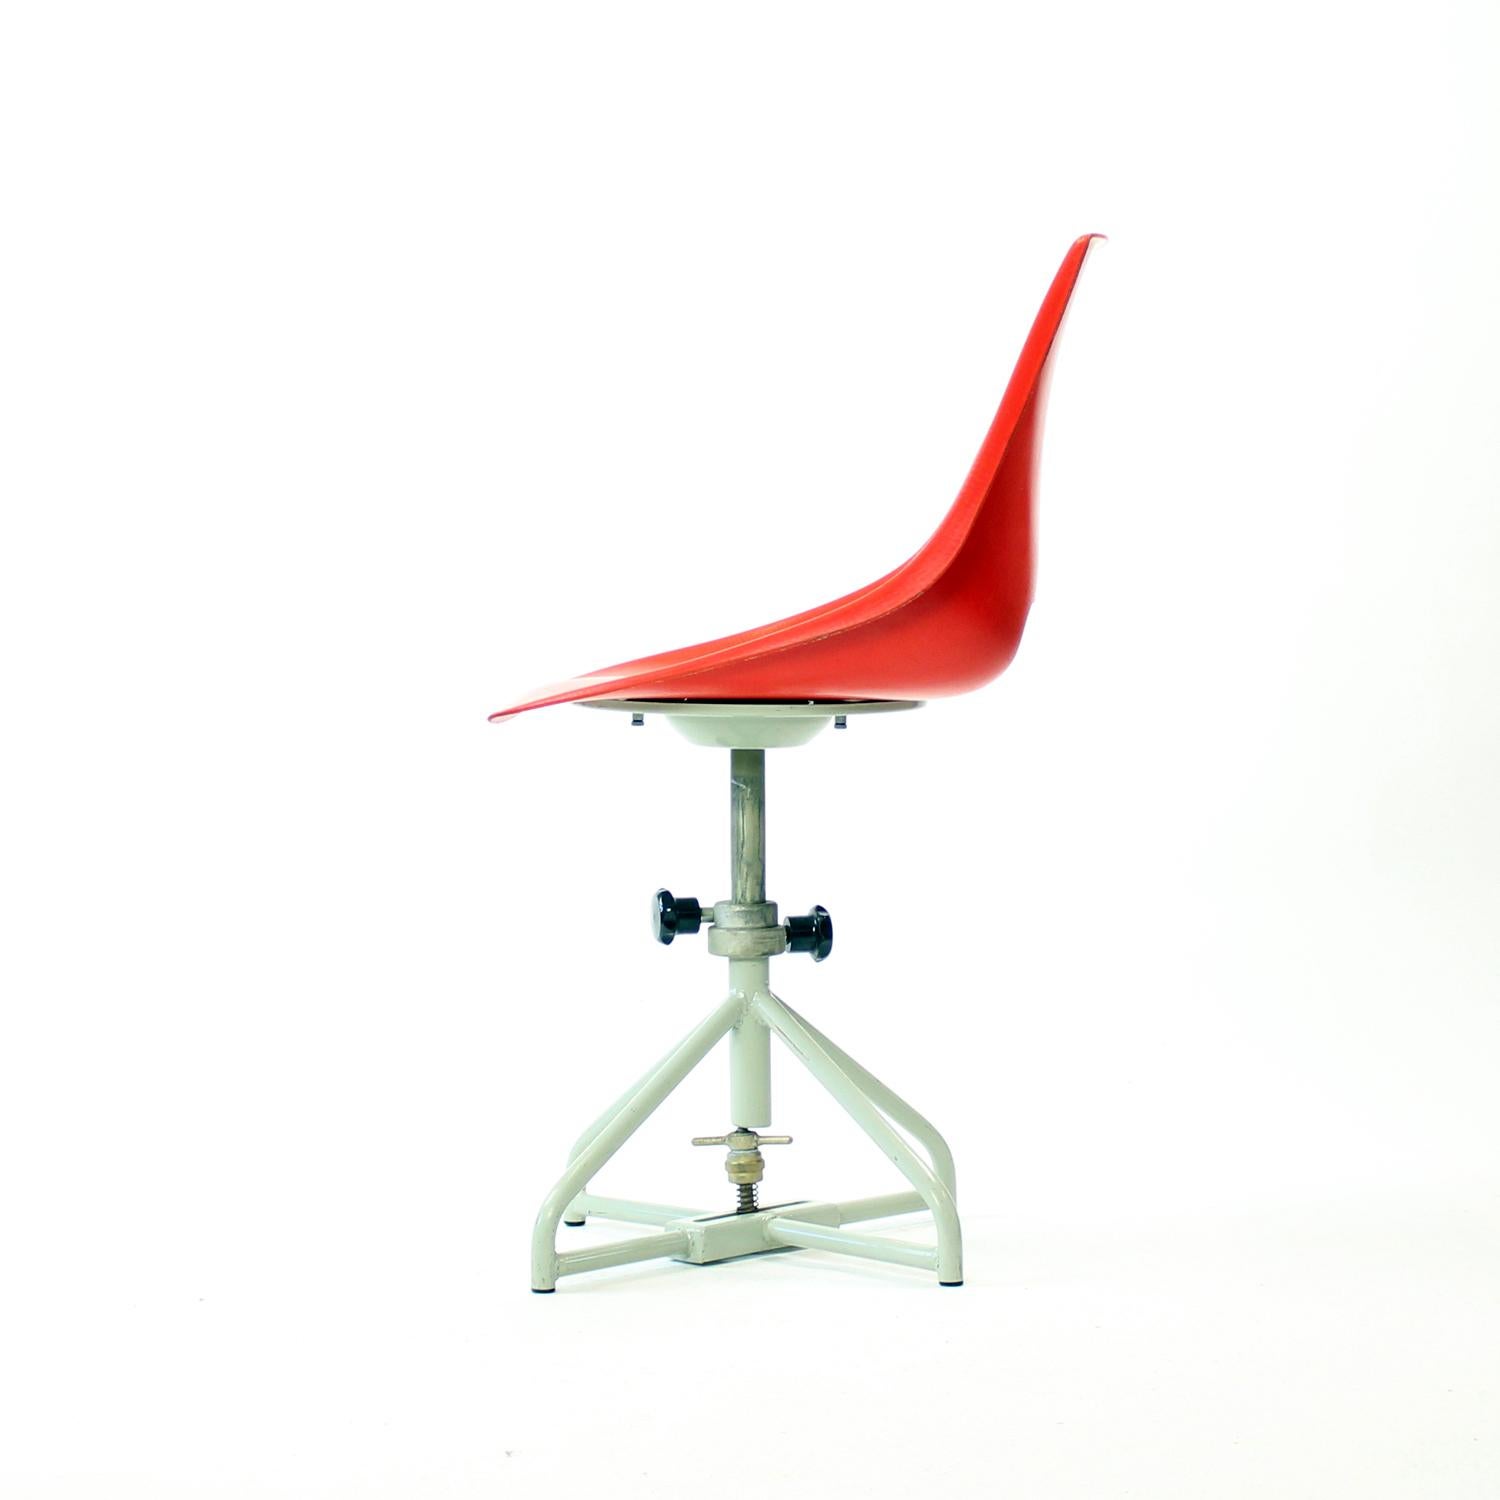 Steel Red Tram Chair By Miroslav Navratil For Vertex, 1960s For Sale